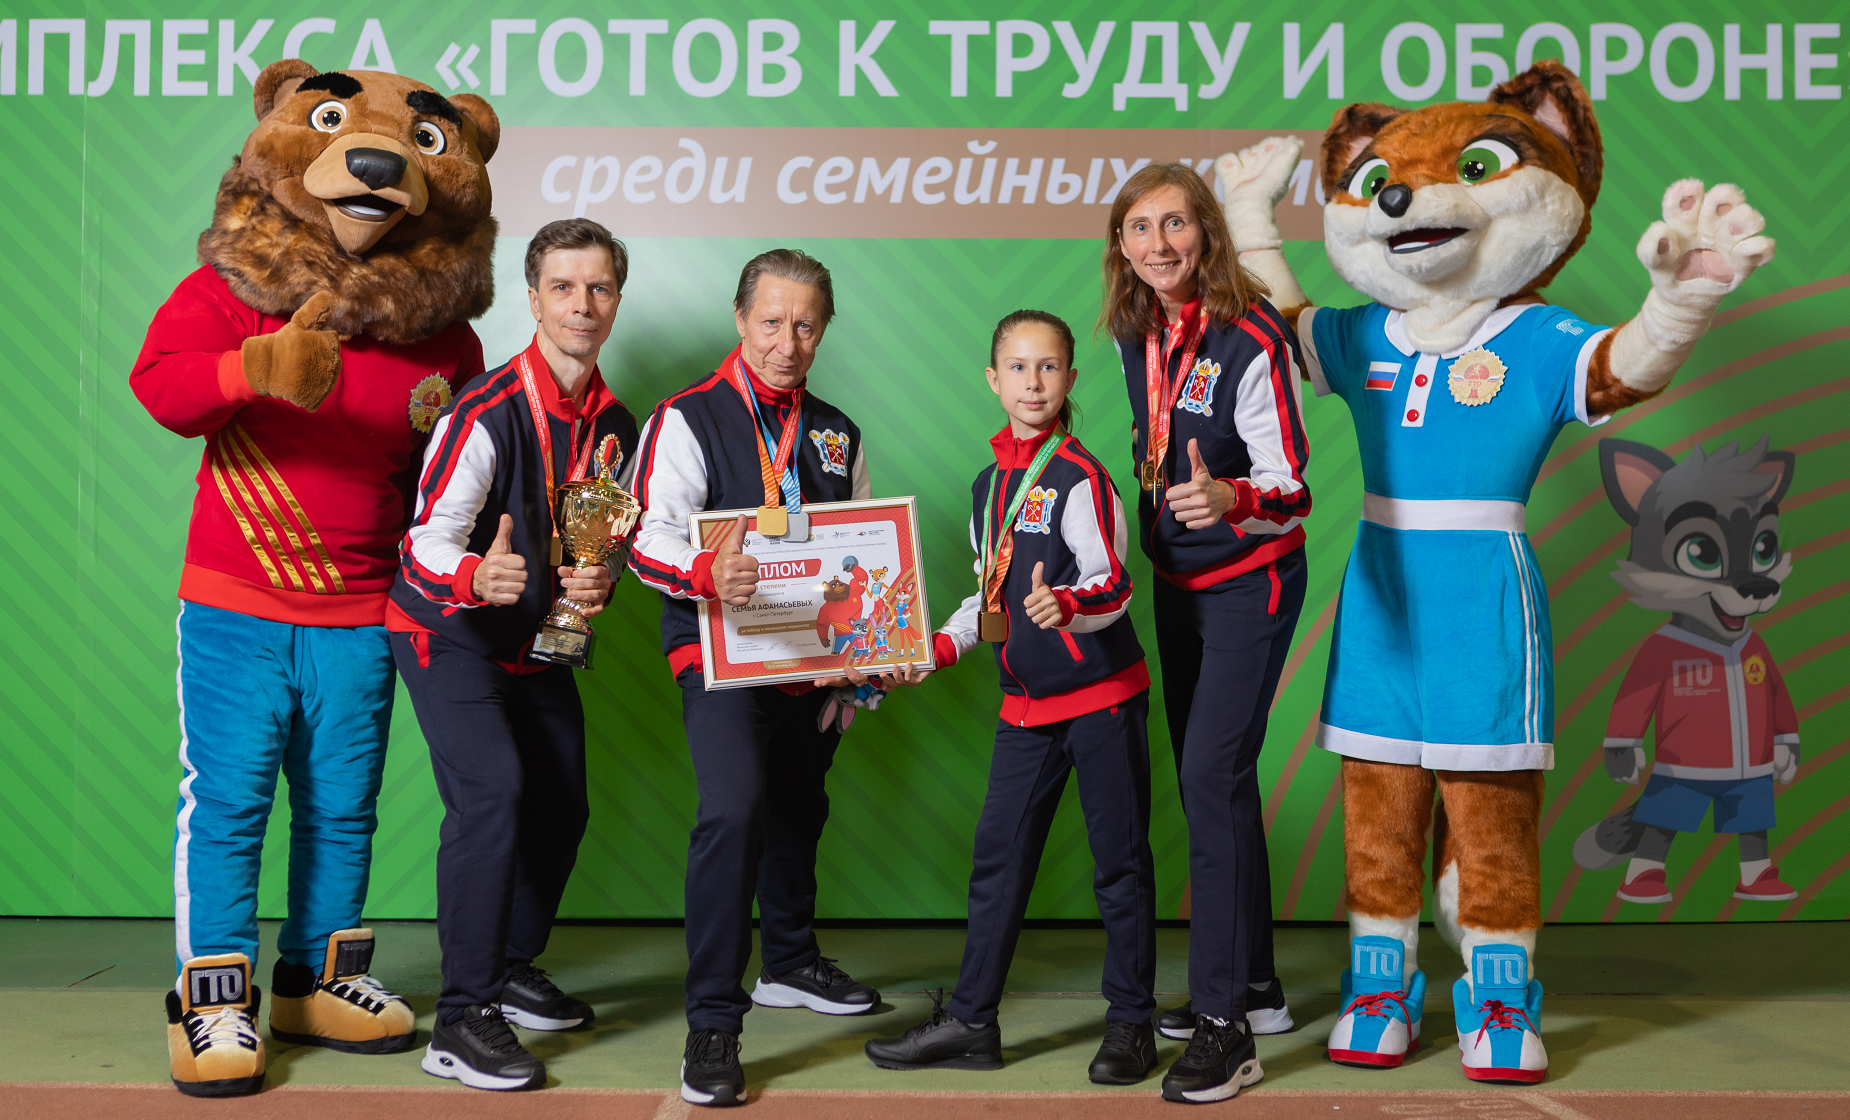 Команда из Санкт-Петербурга стала лучшей по итогам семейного фестиваля ГТО